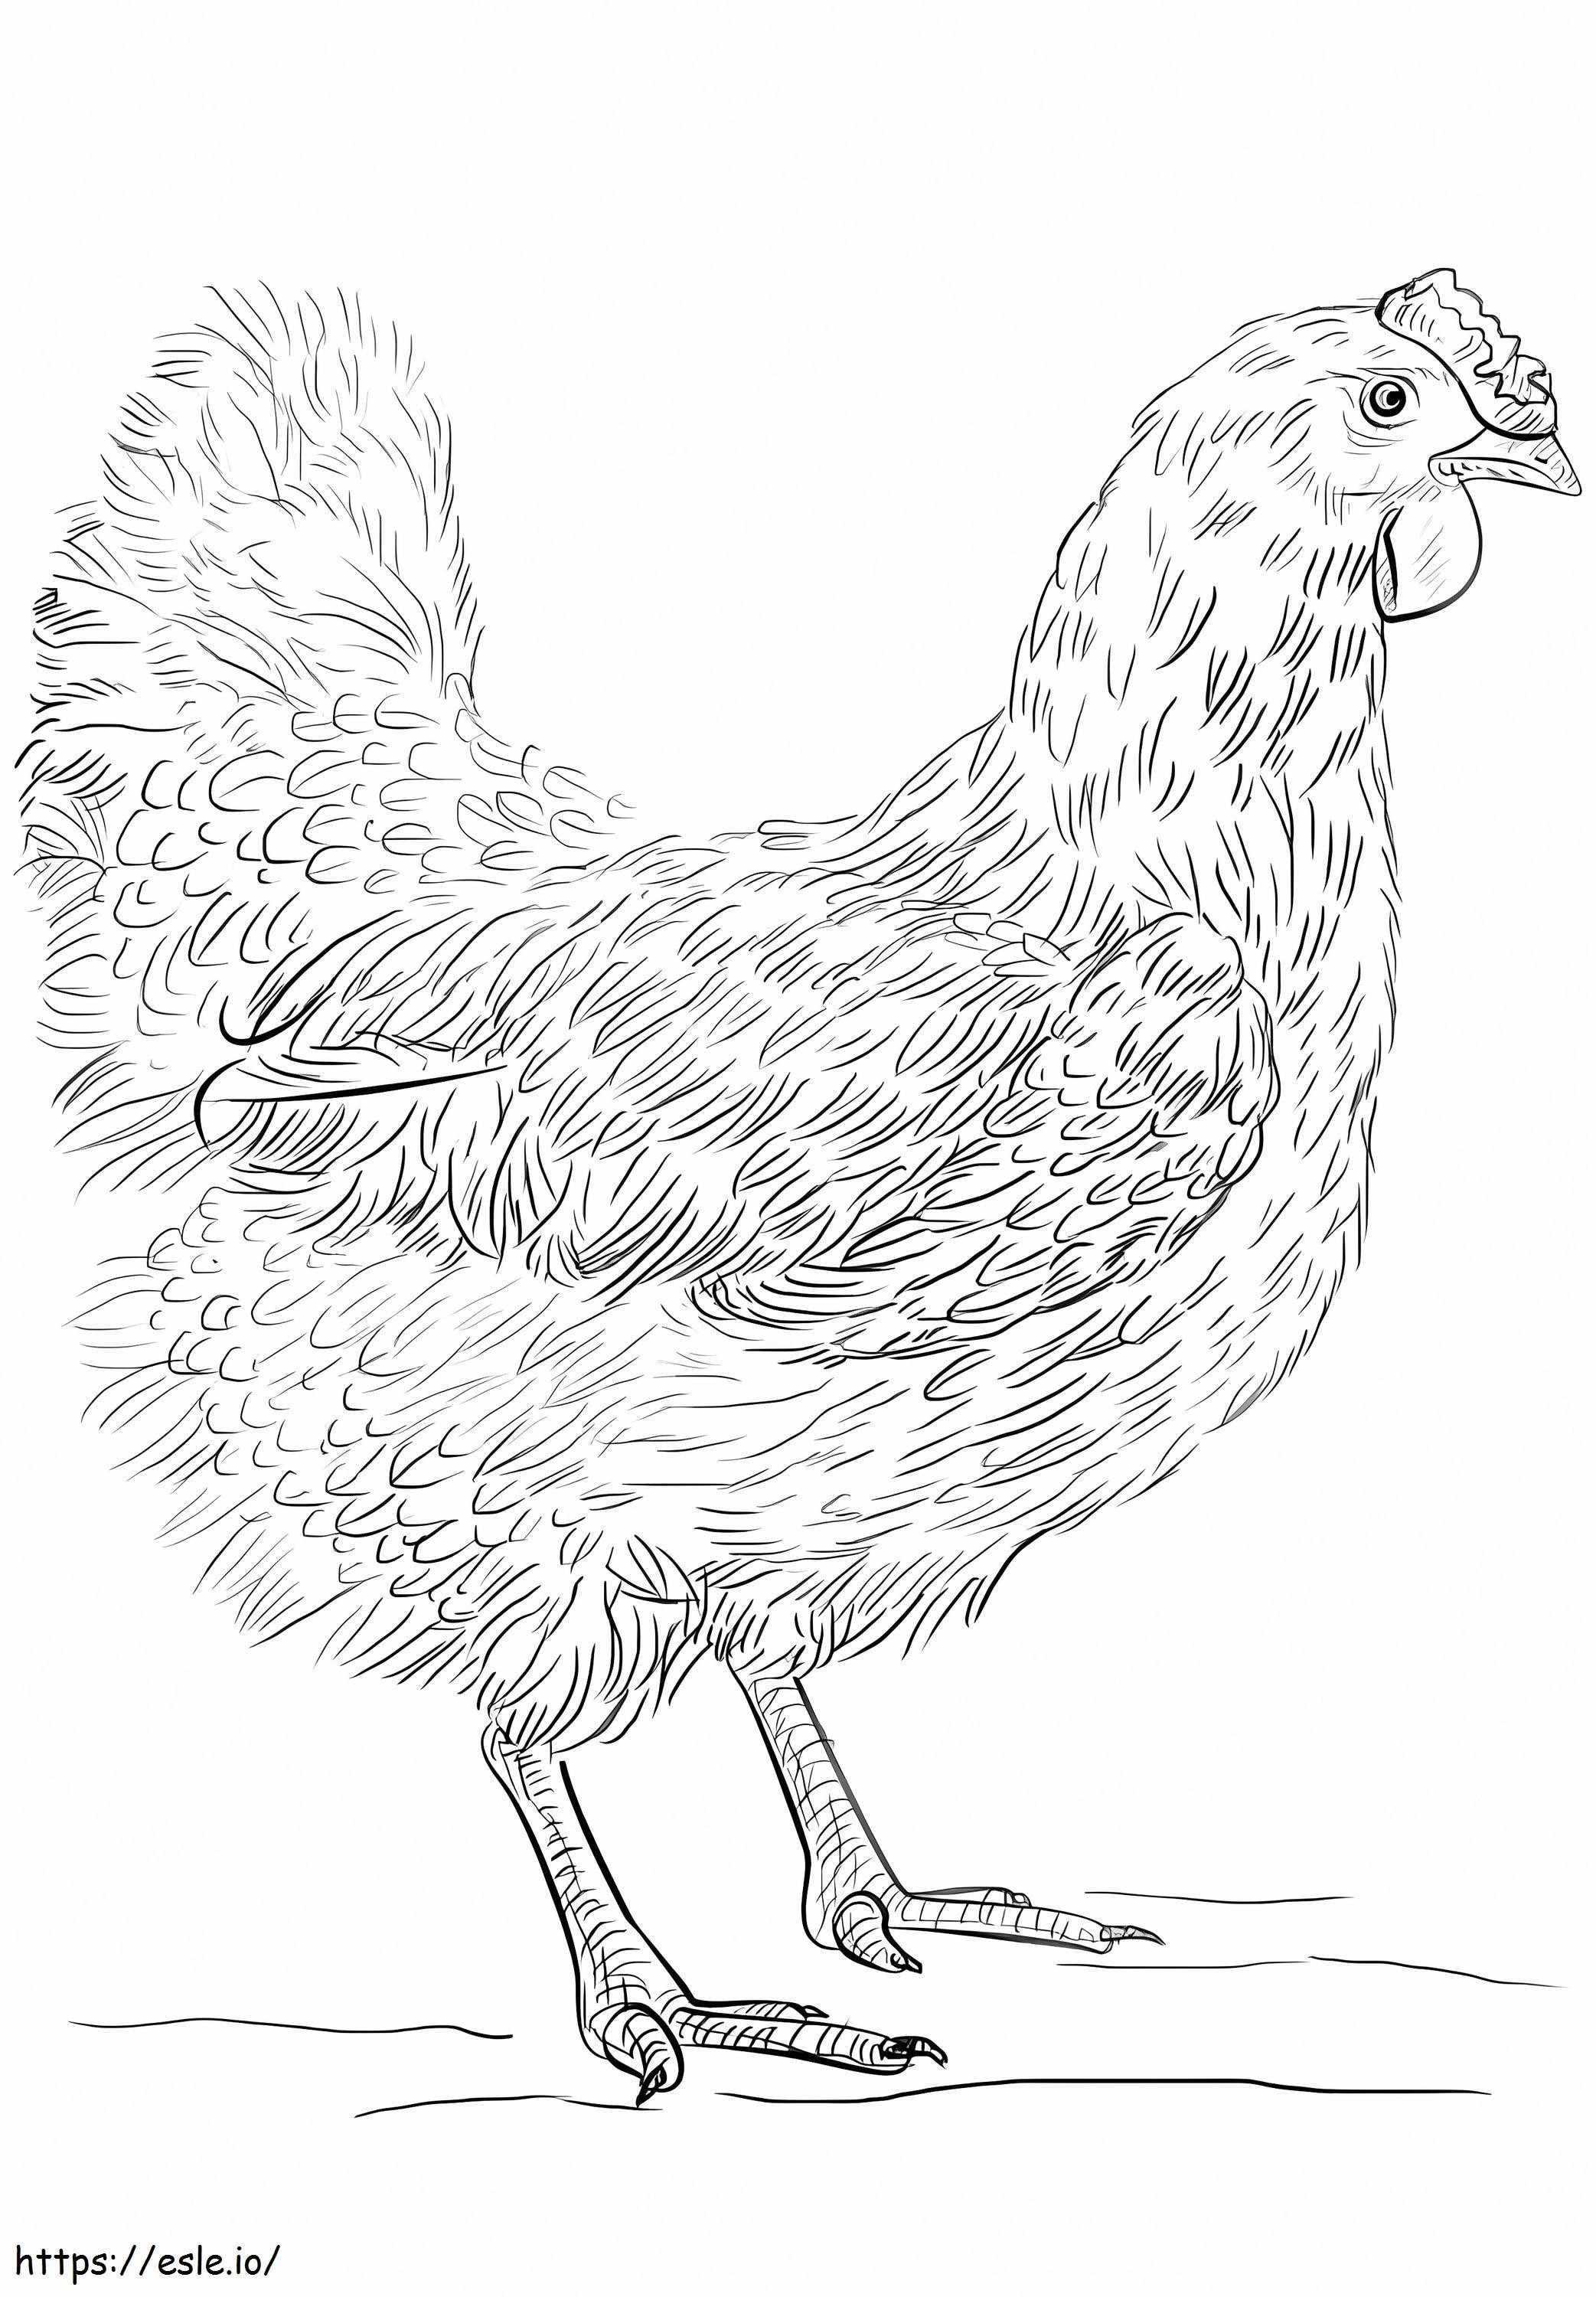 Realistisches Huhn ausmalbilder